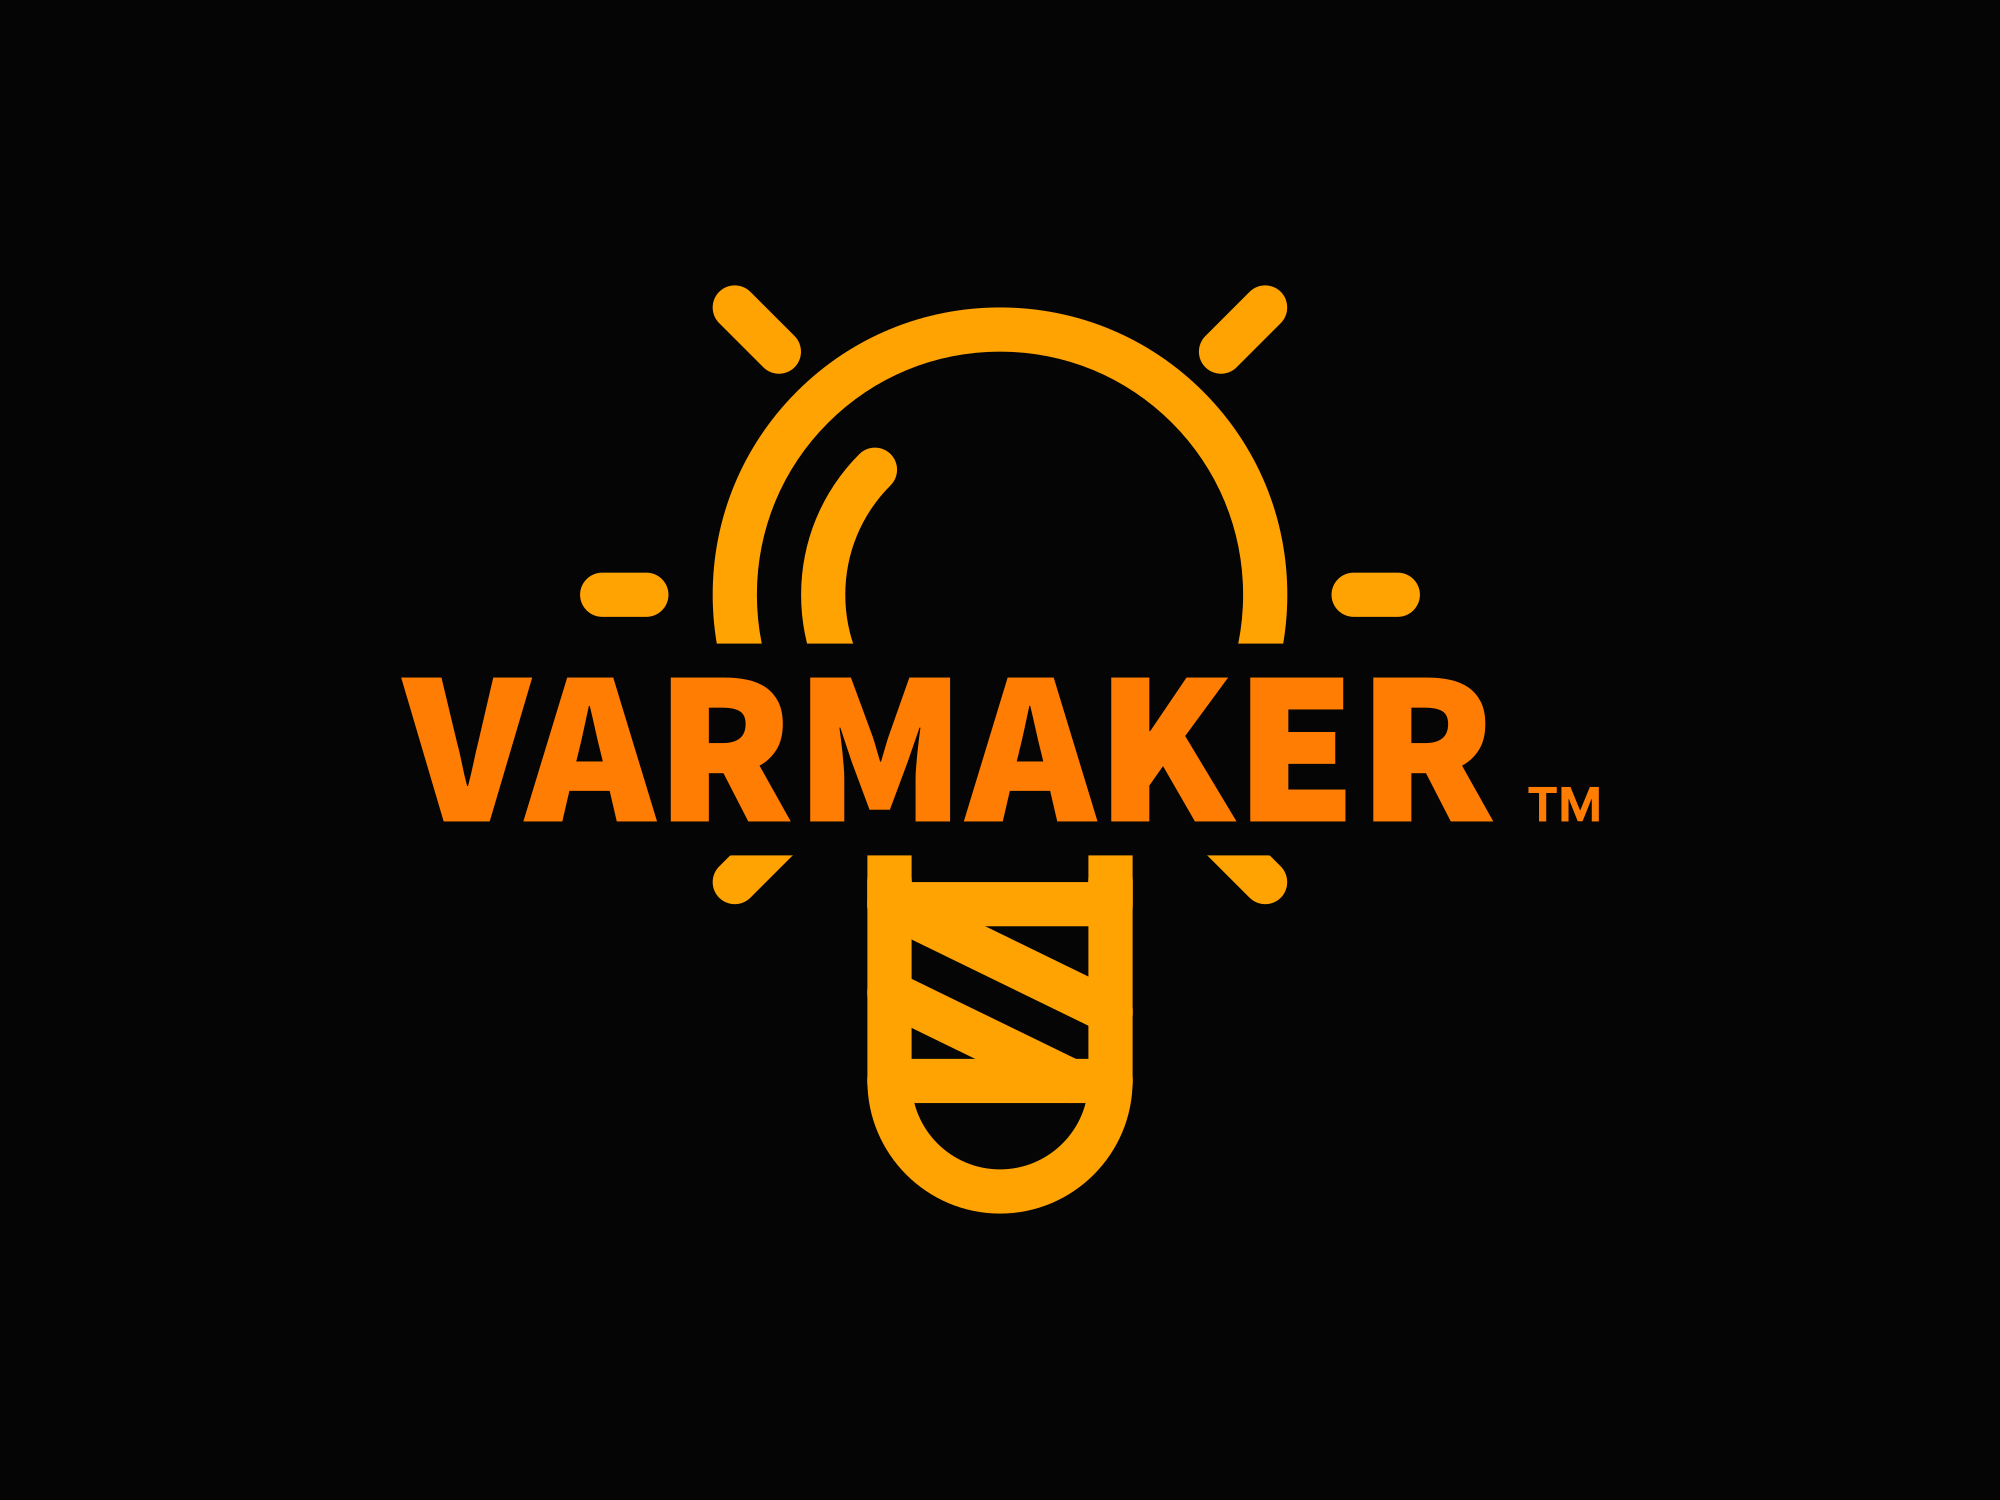 VarMaker